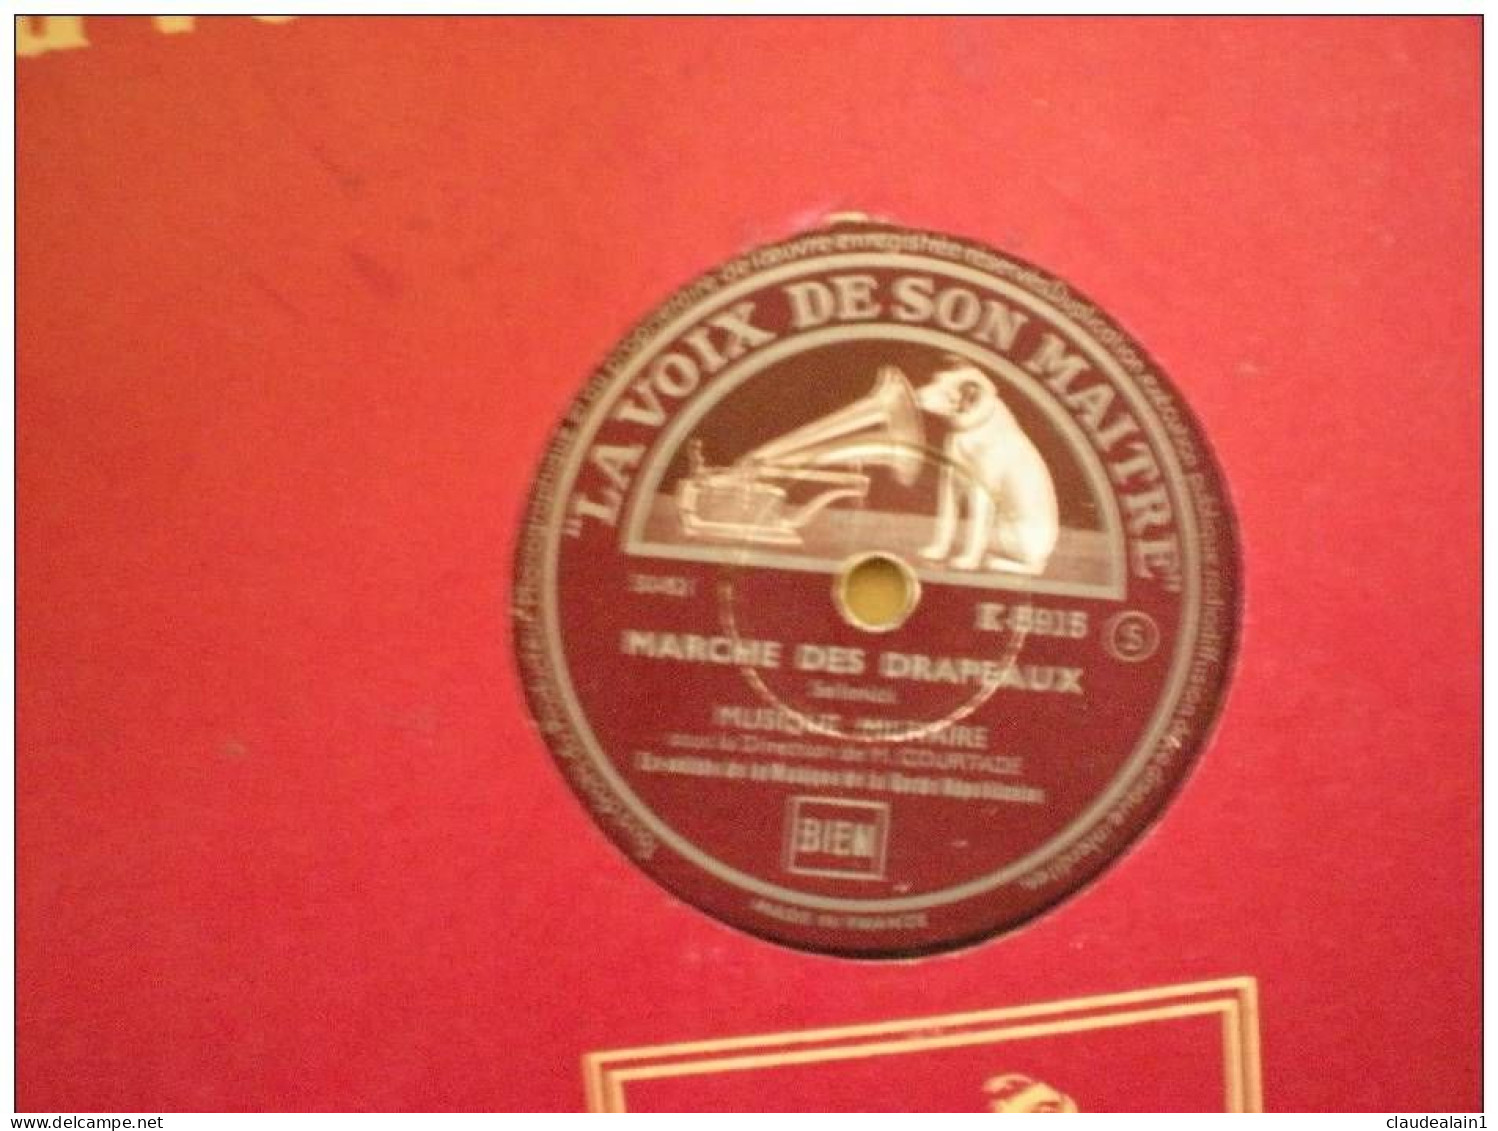 DISQUE LA VOIX DE SON MAITRE VINYLE 78T - MUSIQUE MILITAIRE DE M.COURTADE - MARCHE DES DRAPEAUX - PARIS BELFORT - 78 Rpm - Gramophone Records